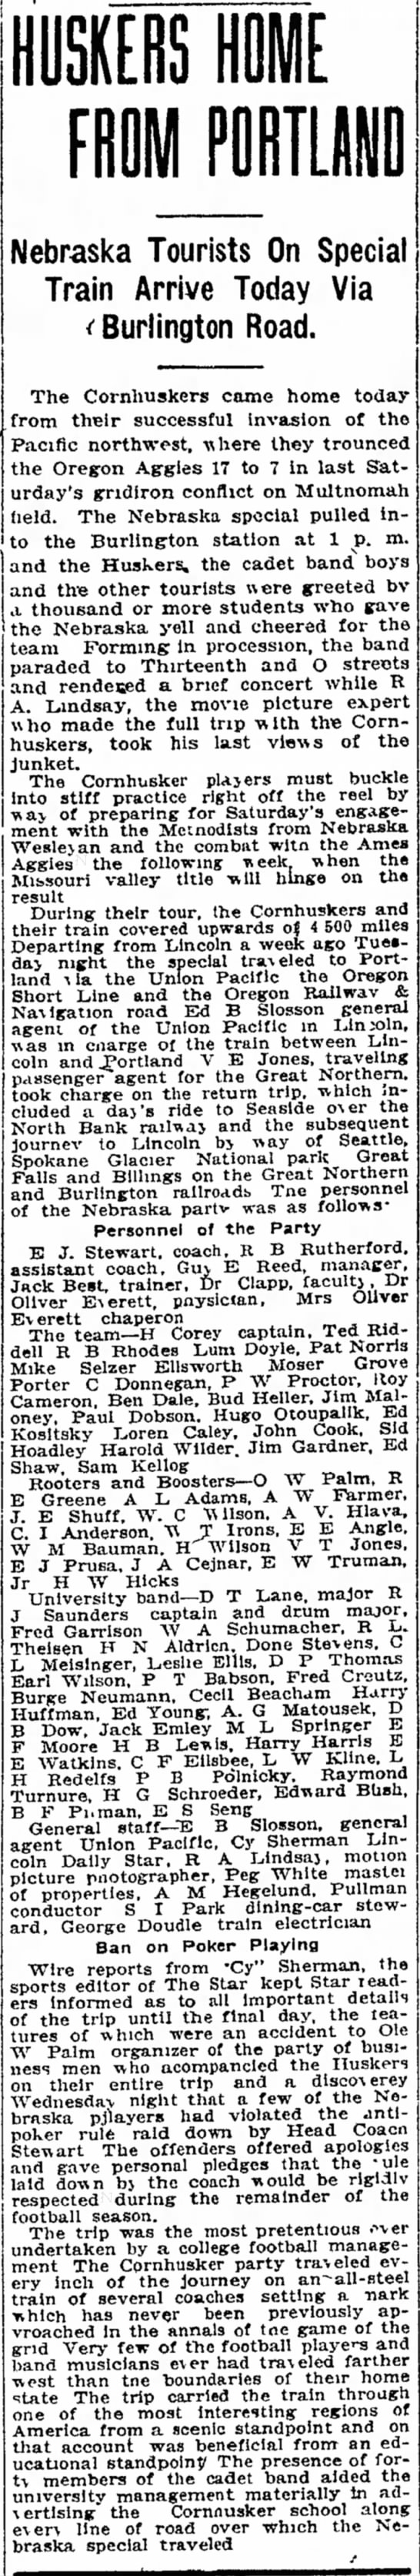 1916 Portland trip, Lincoln arrival - 